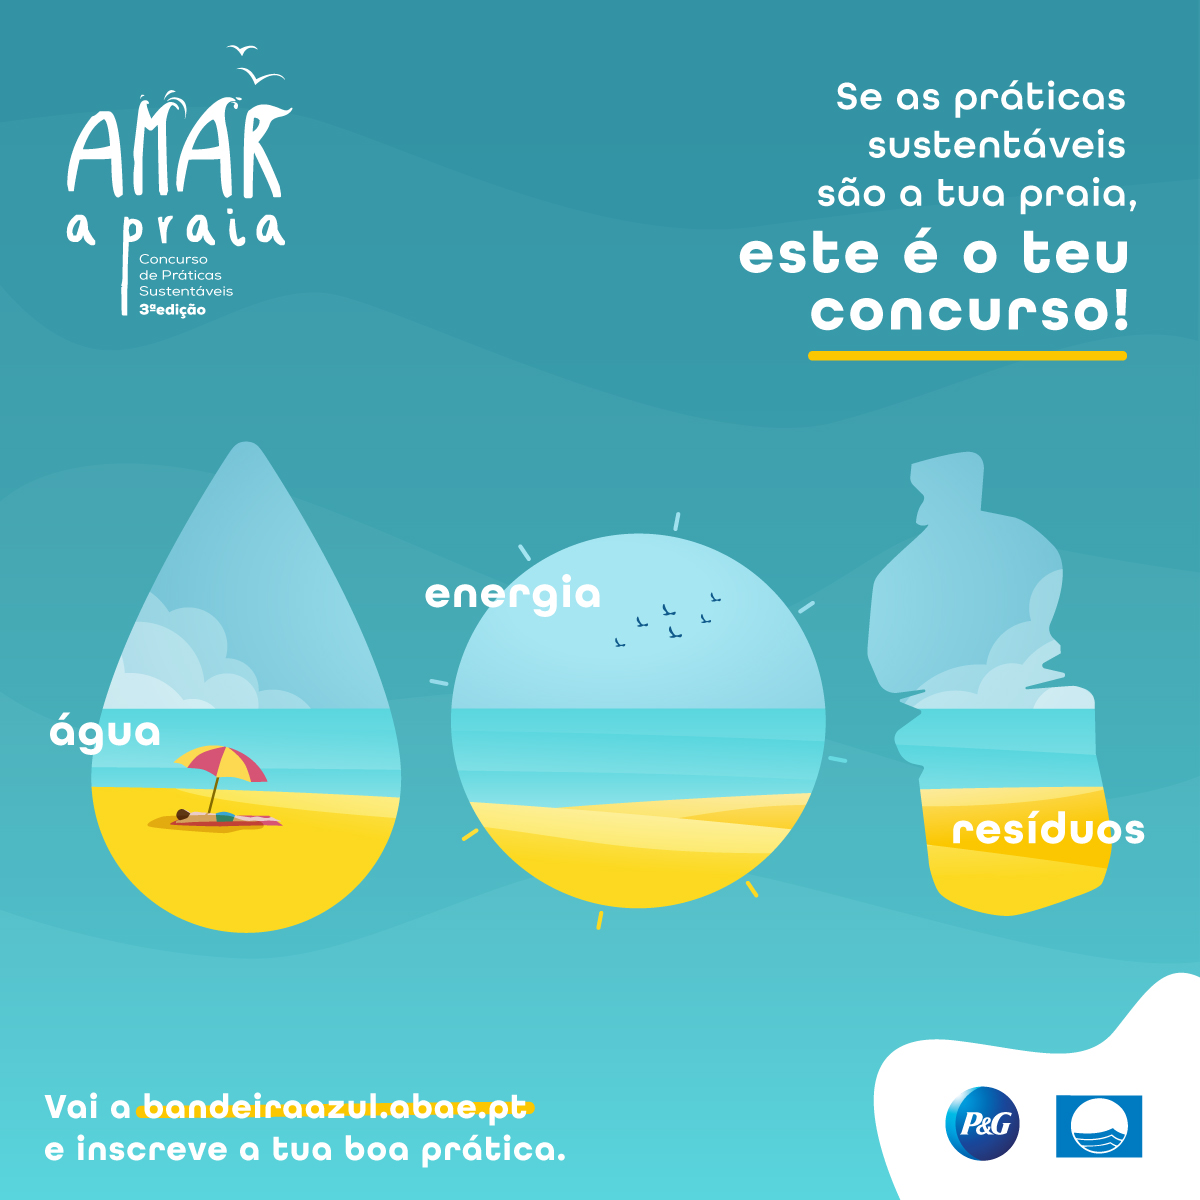 P&G Portugal e Associação Bandeira Azul de Ambiente e Educação lançam 3ª edição do Concurso “AMAR A PRAIA”